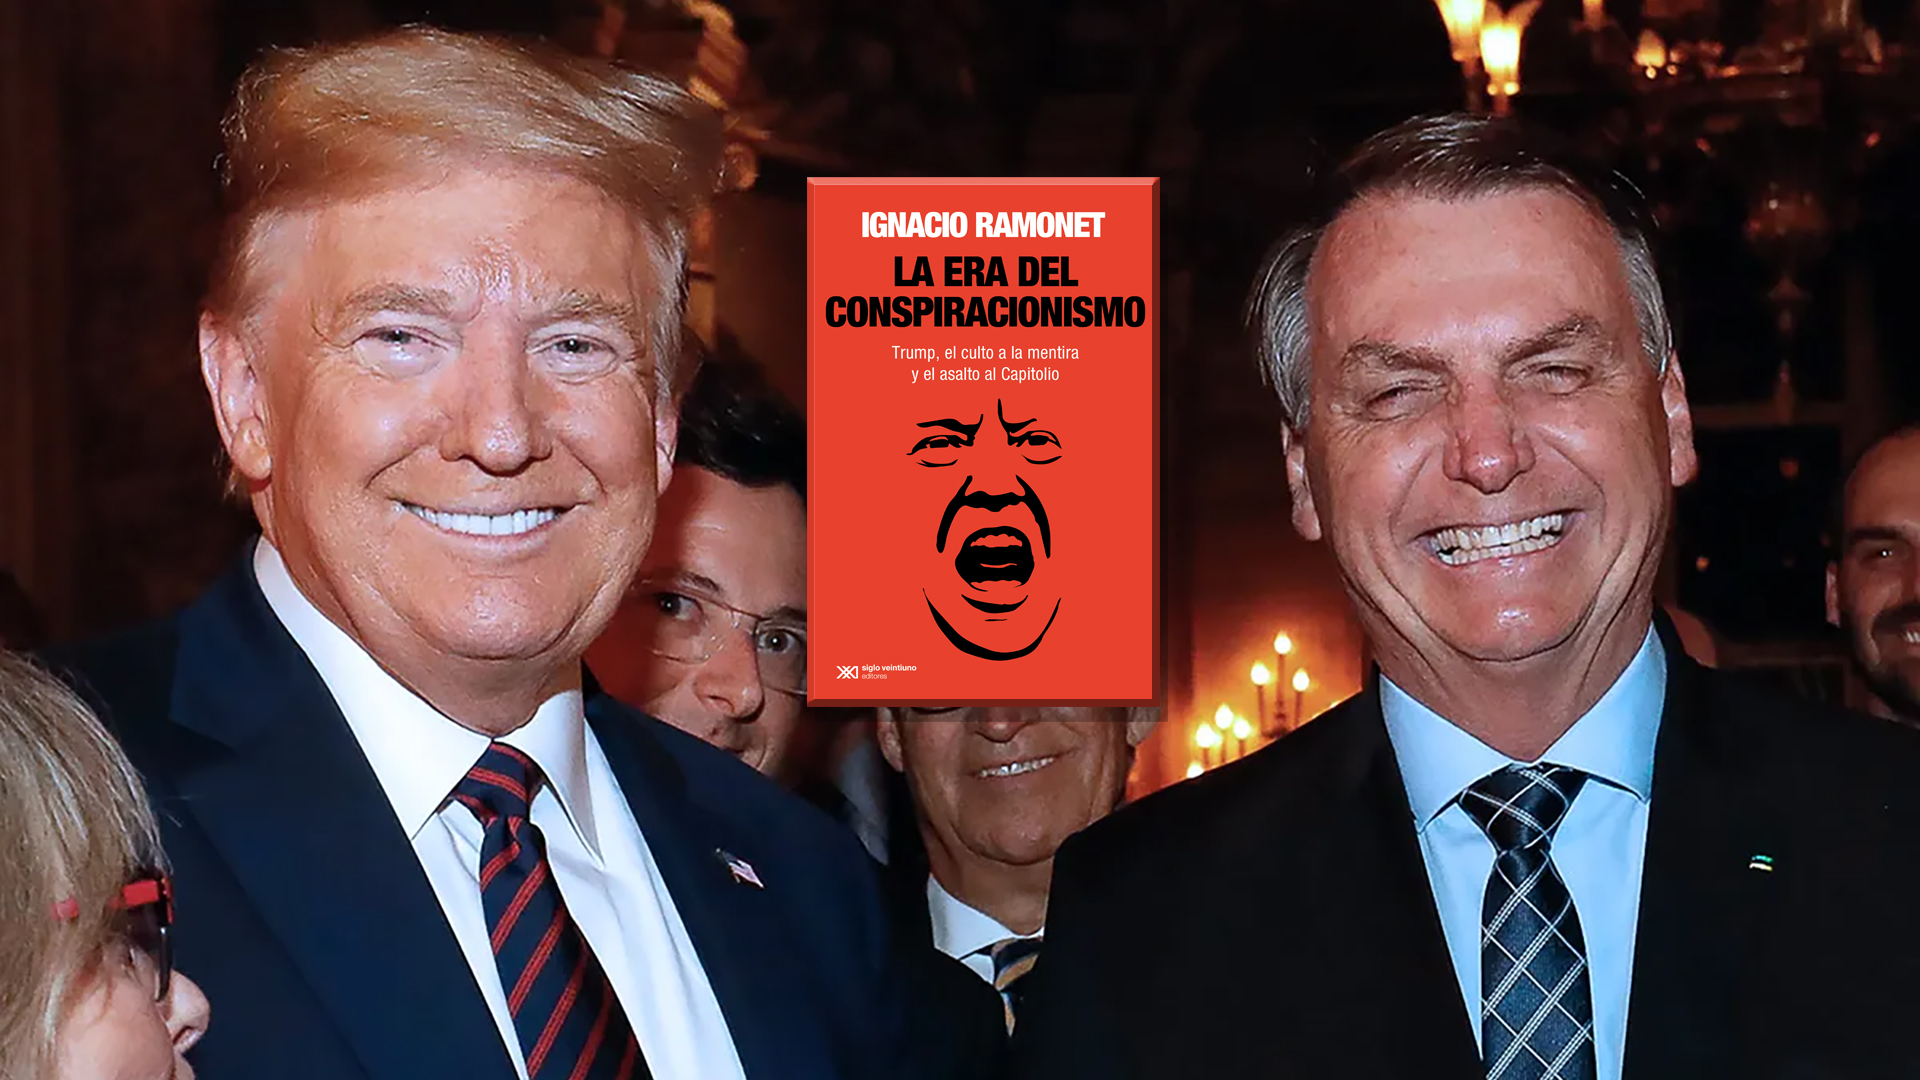 Mentime que me gusta: bienvenidos a “La era del conspiracionismo” de Trump y Bolsonaro